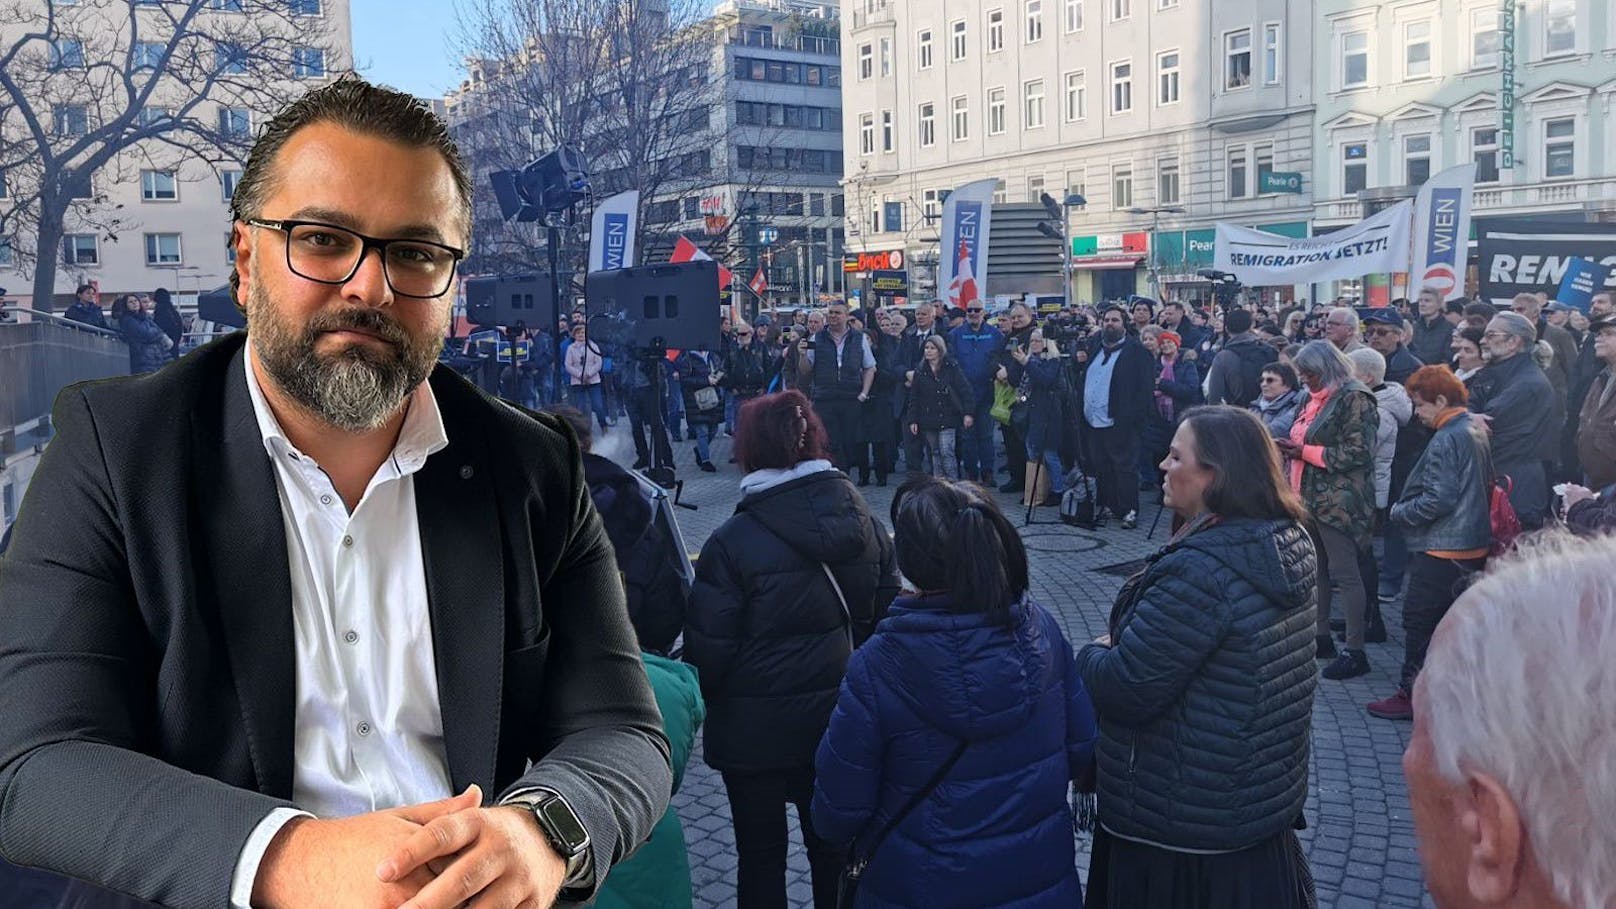 "Bei Ferhat mehr los" – SPÖ-Mann spottet über FPÖ-Demo